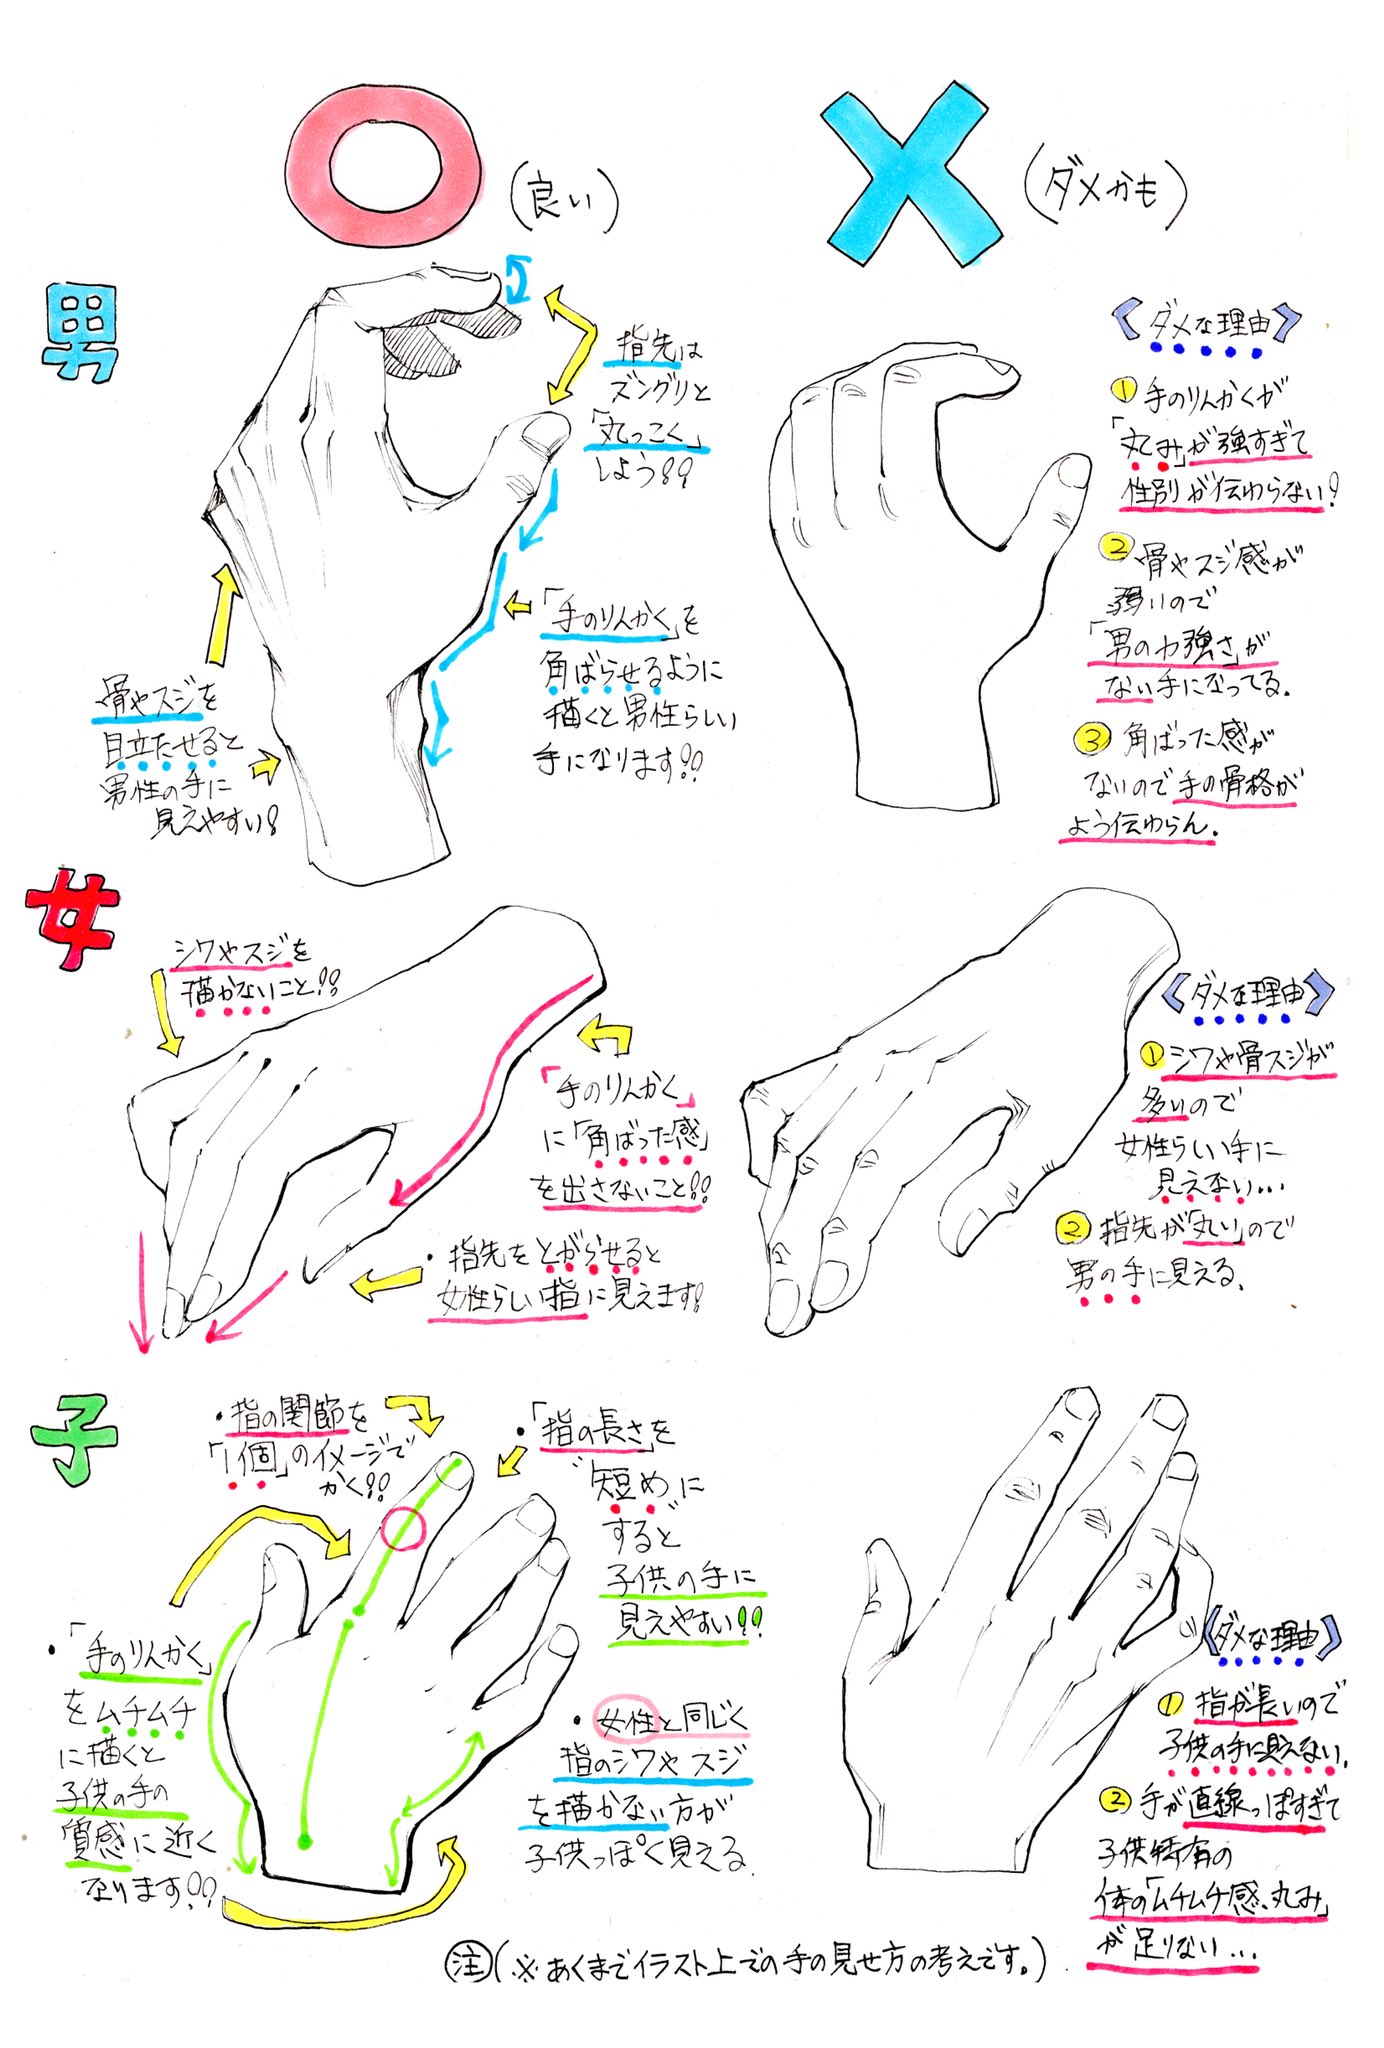 吉村拓也 イラスト講座 手の描き方 男性 女性 子供の手を描くときの ダメなこと と 良いこと 日本語版 と 英語版 作ったのですが 英語わかる方 この翻訳正しいですか I Translated Japanese Into English Is This